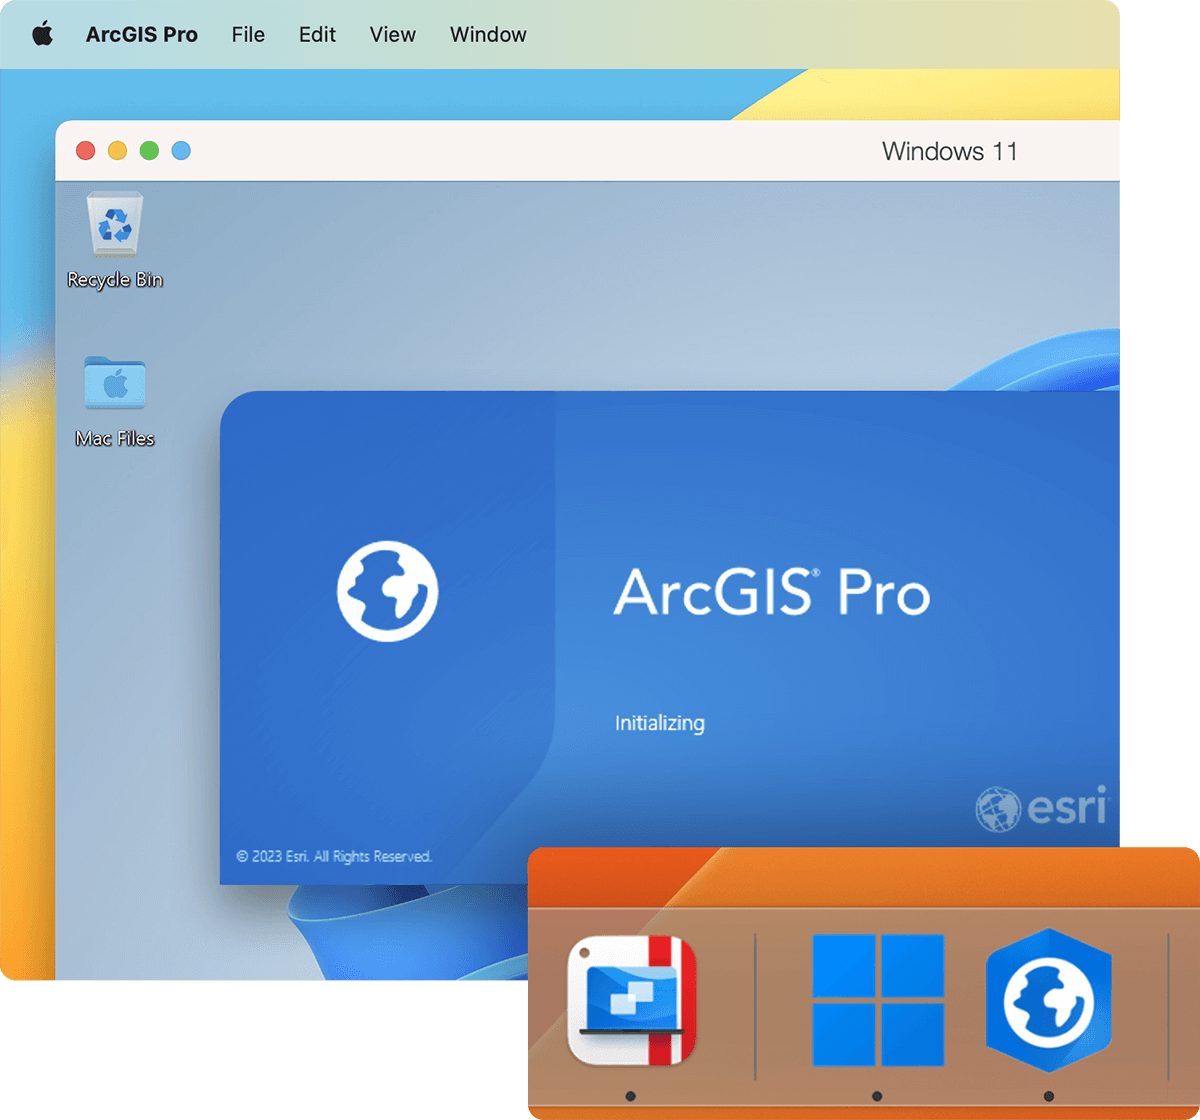 运行 ArcGIS Pro、ArcMap 和其他地理信息系统 (GIS) 软件，创建、分析、虚拟化和共享空间数据